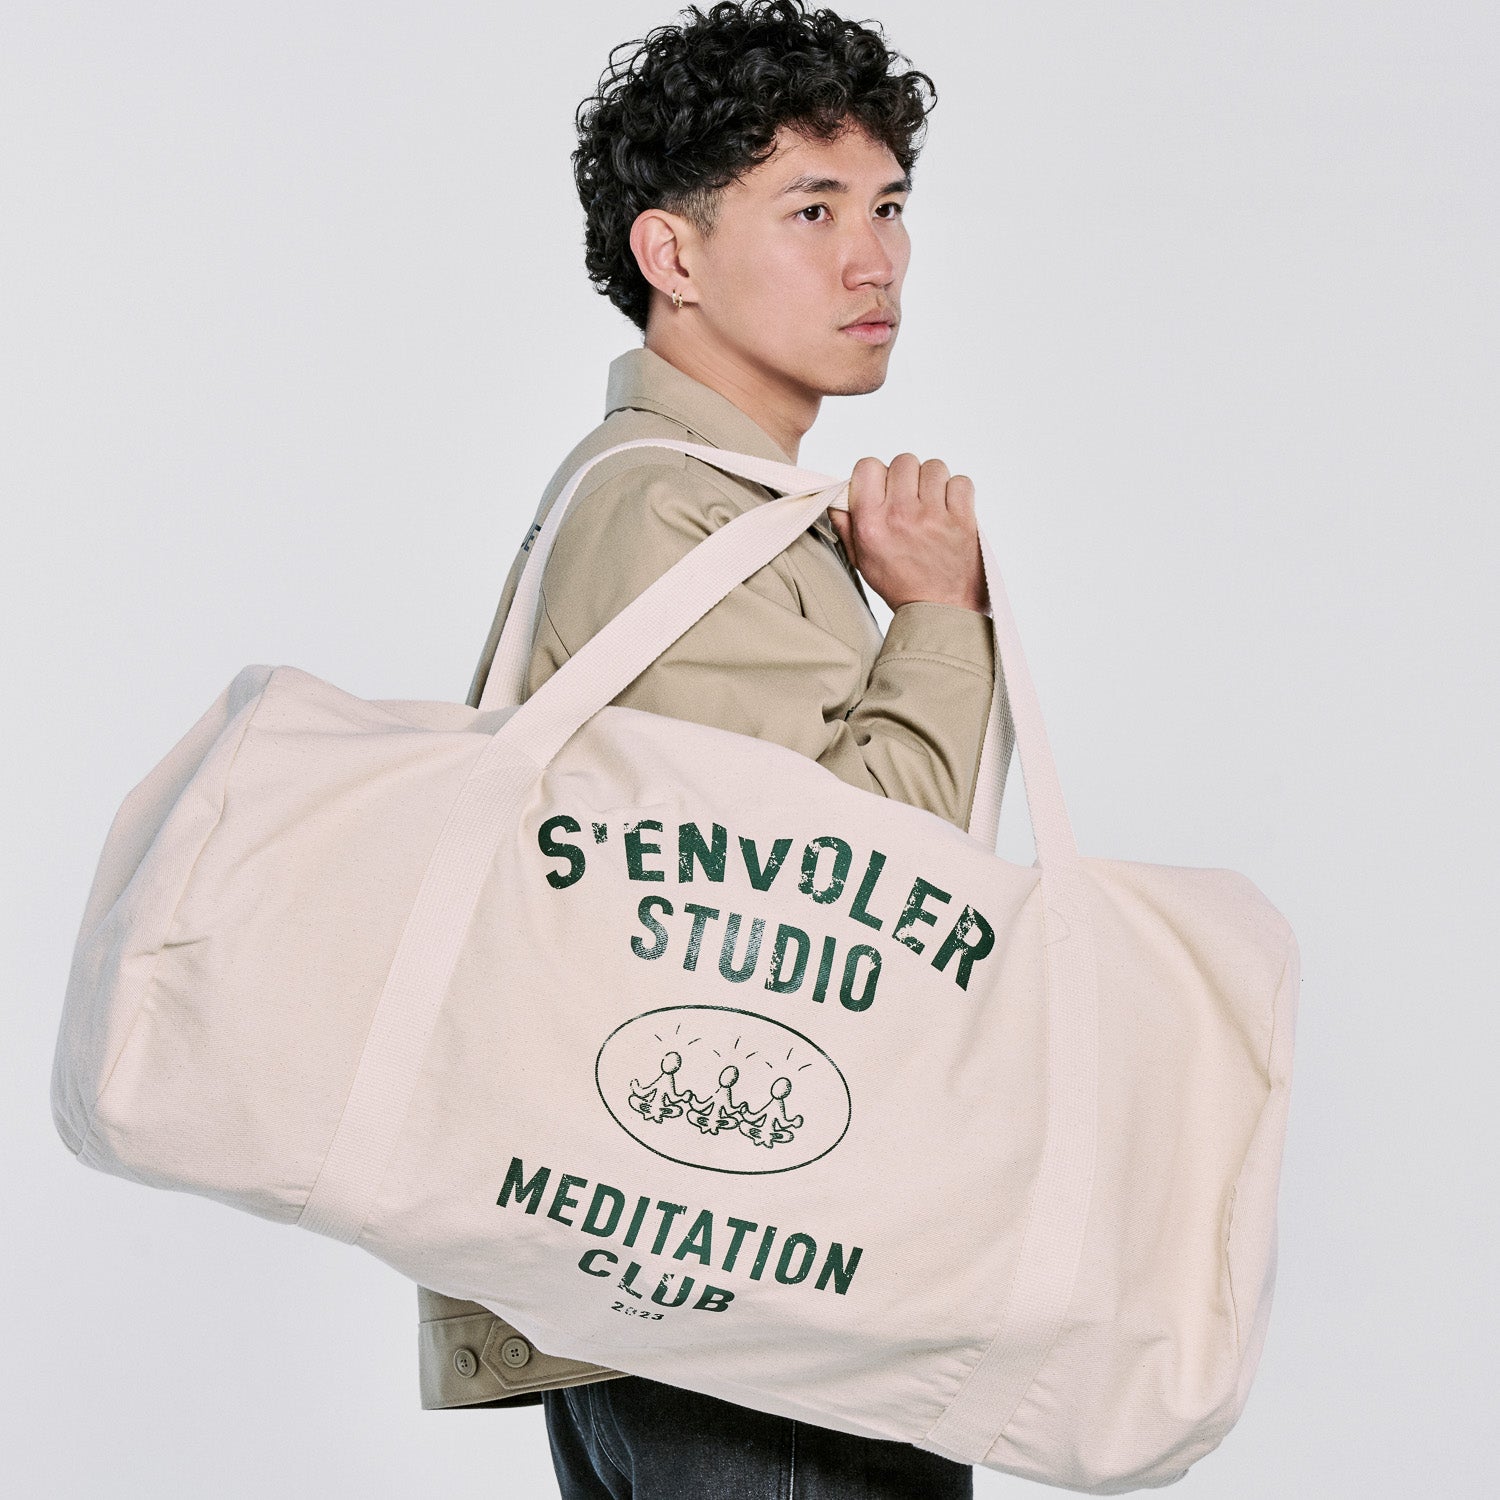 The Meditation Club Duffel Bag